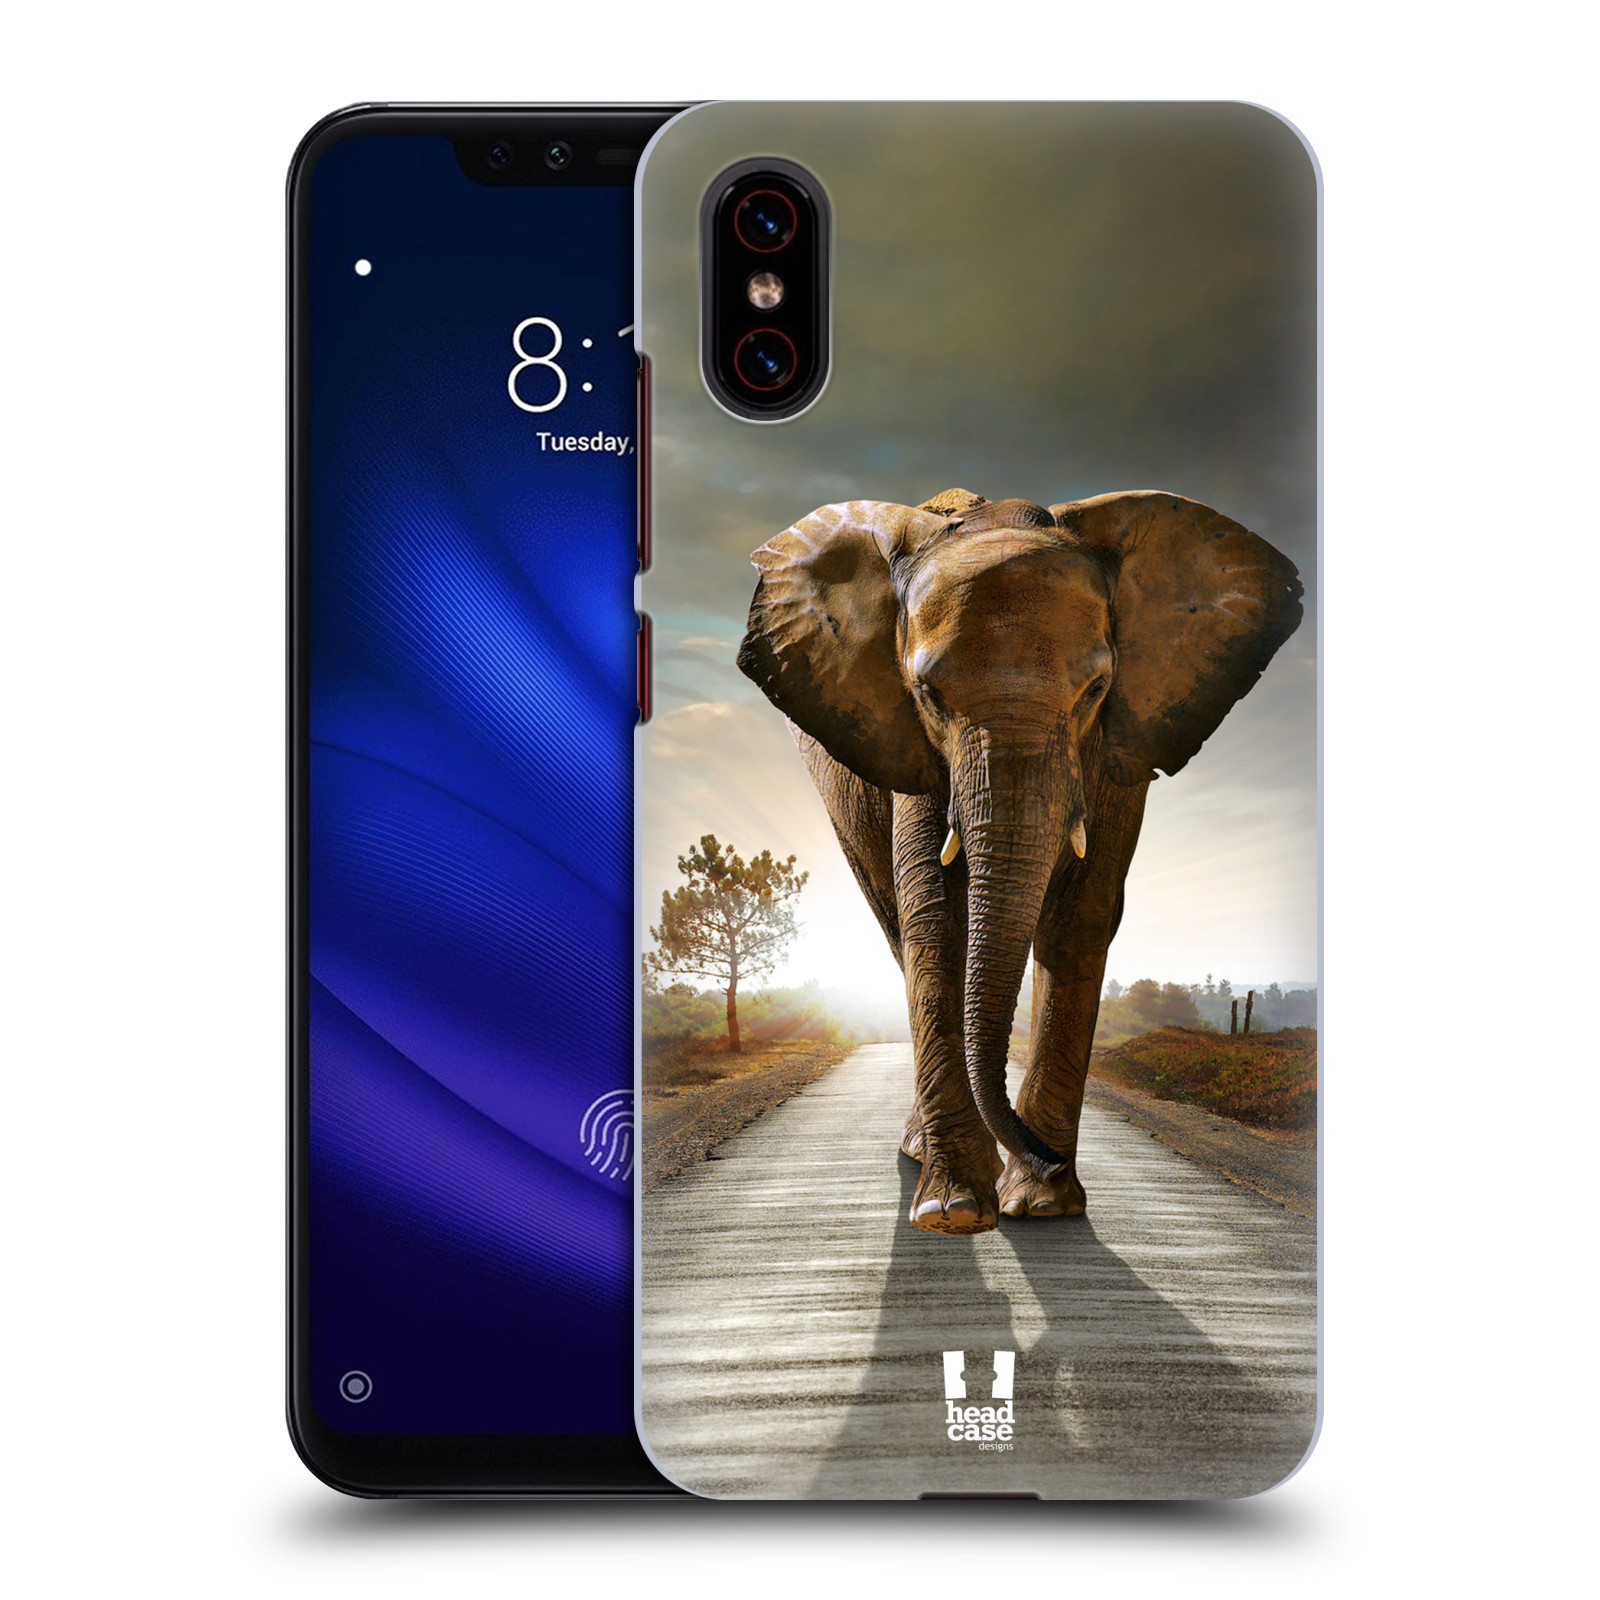 Zadní obal pro mobil Xiaomi Mi 8 PRO - HEAD CASE - Svět zvířat kráčející slon